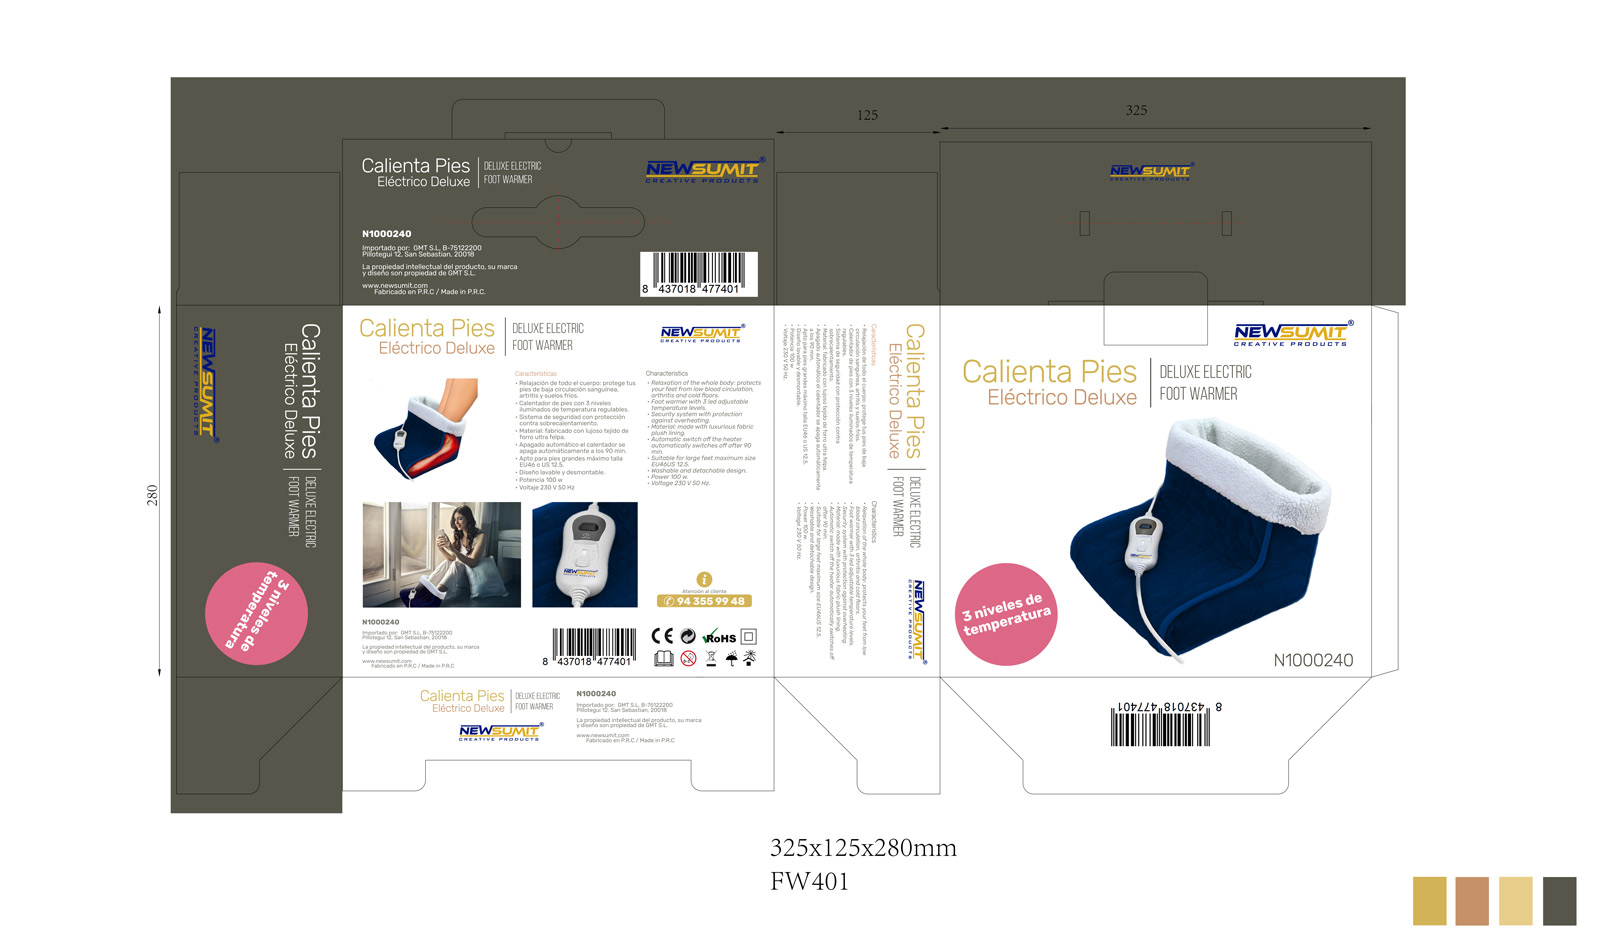 Diseño gráfico y creativo de etiquetas y packaging de productos de venta en AMAZON - calienta pies